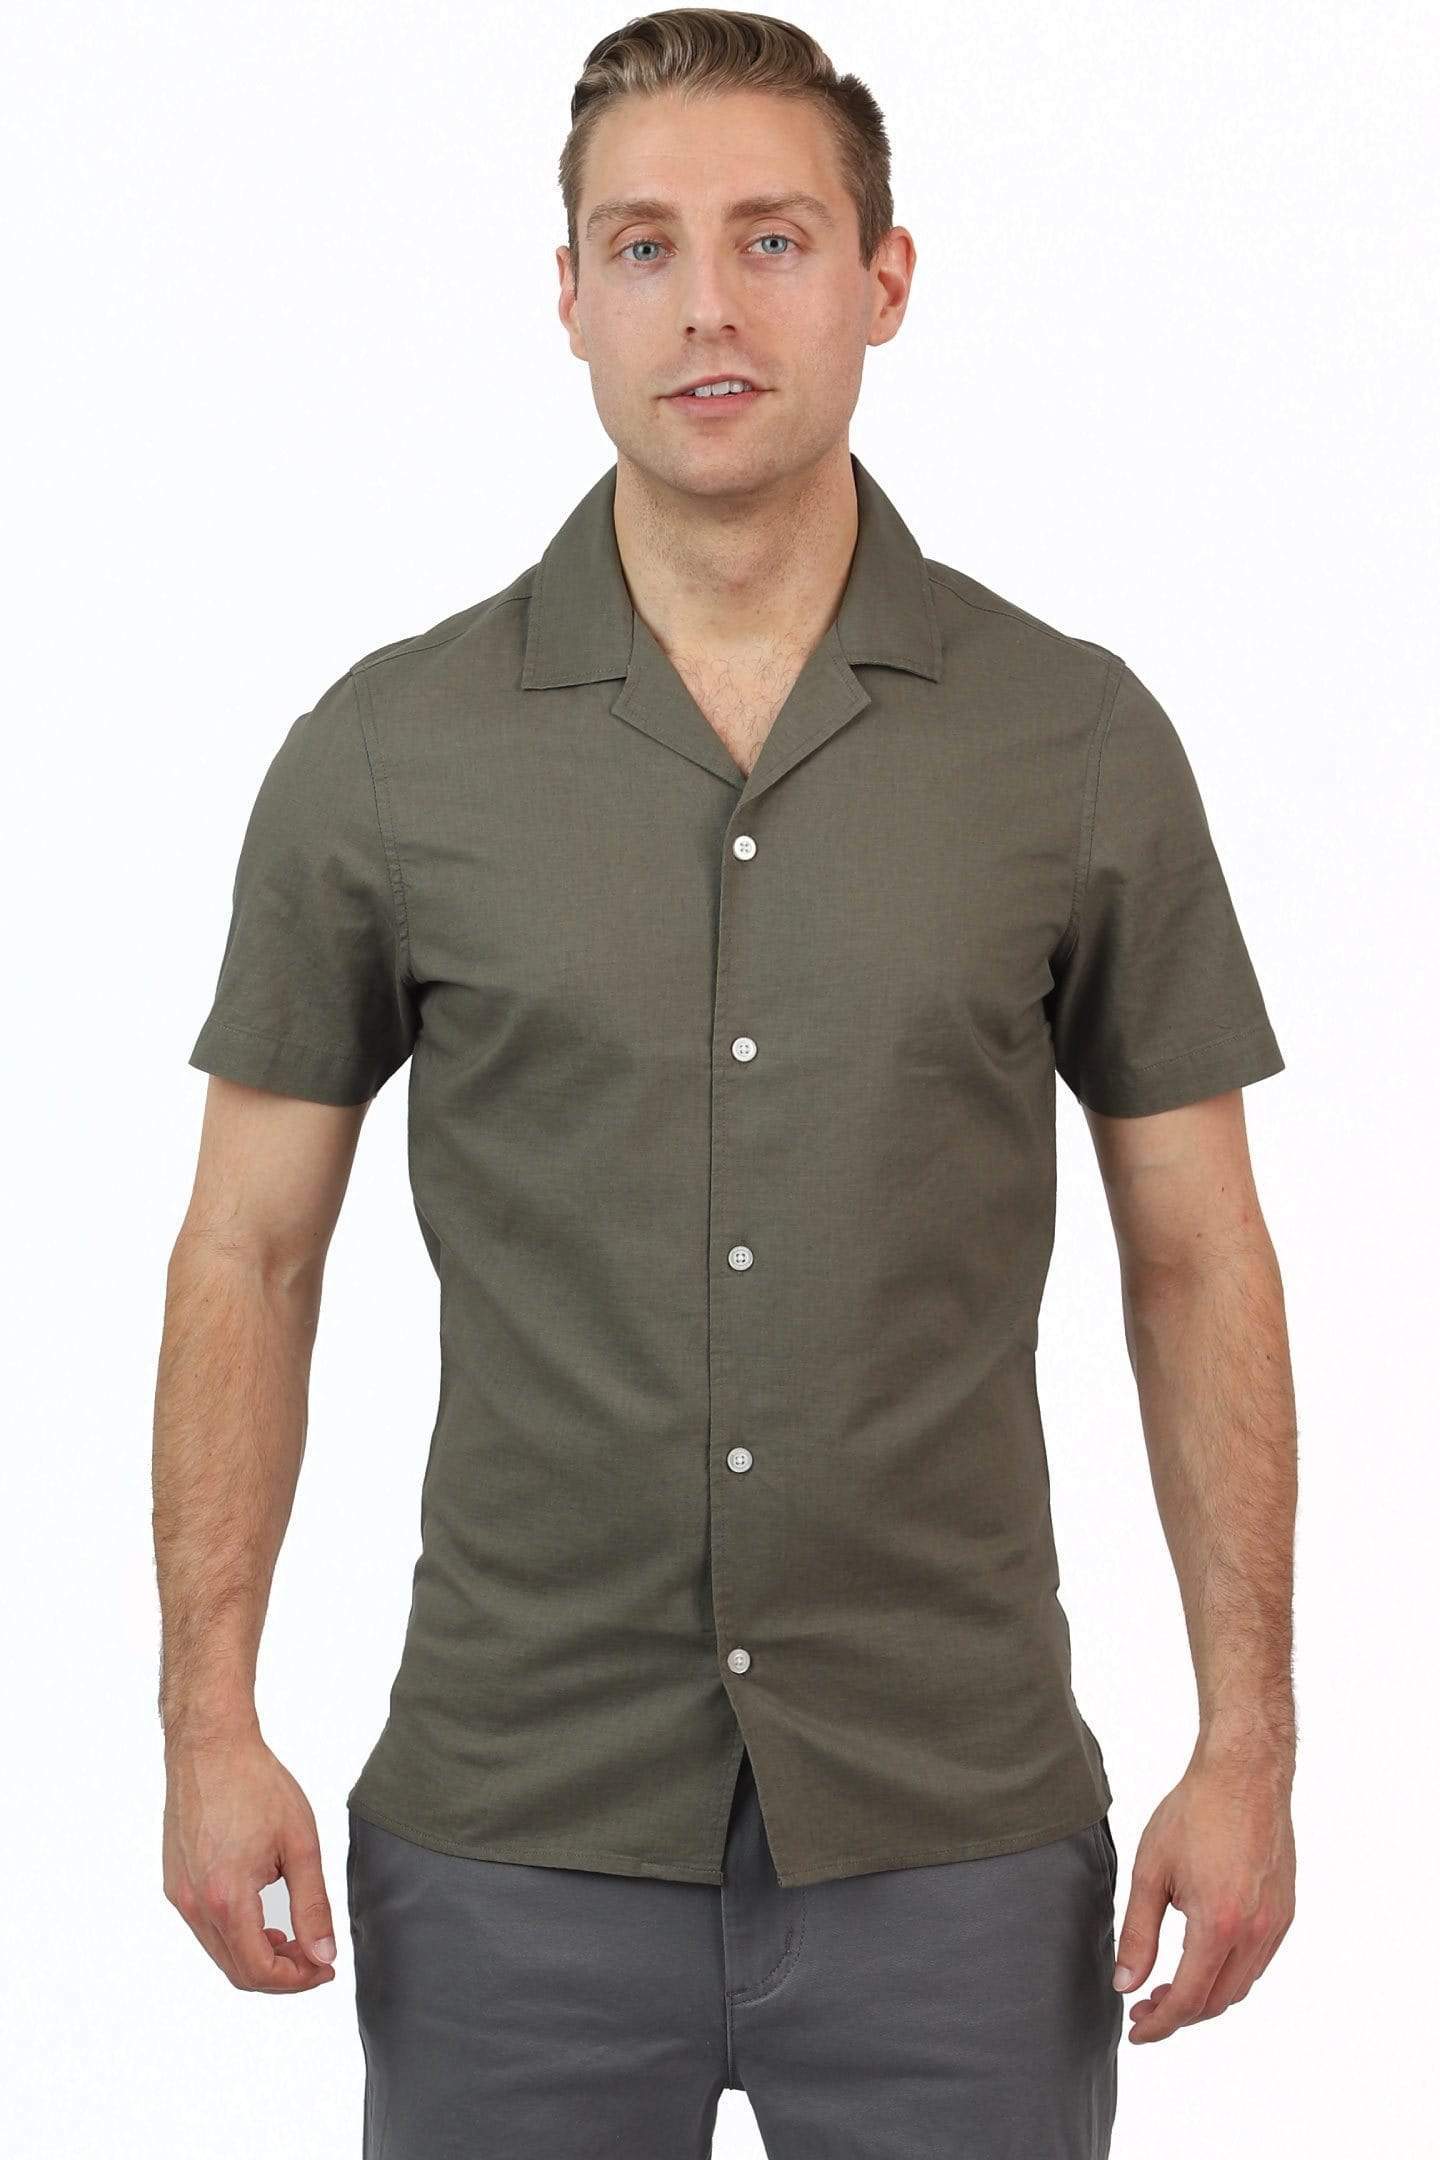 Canopy Green Open Collar Shirt